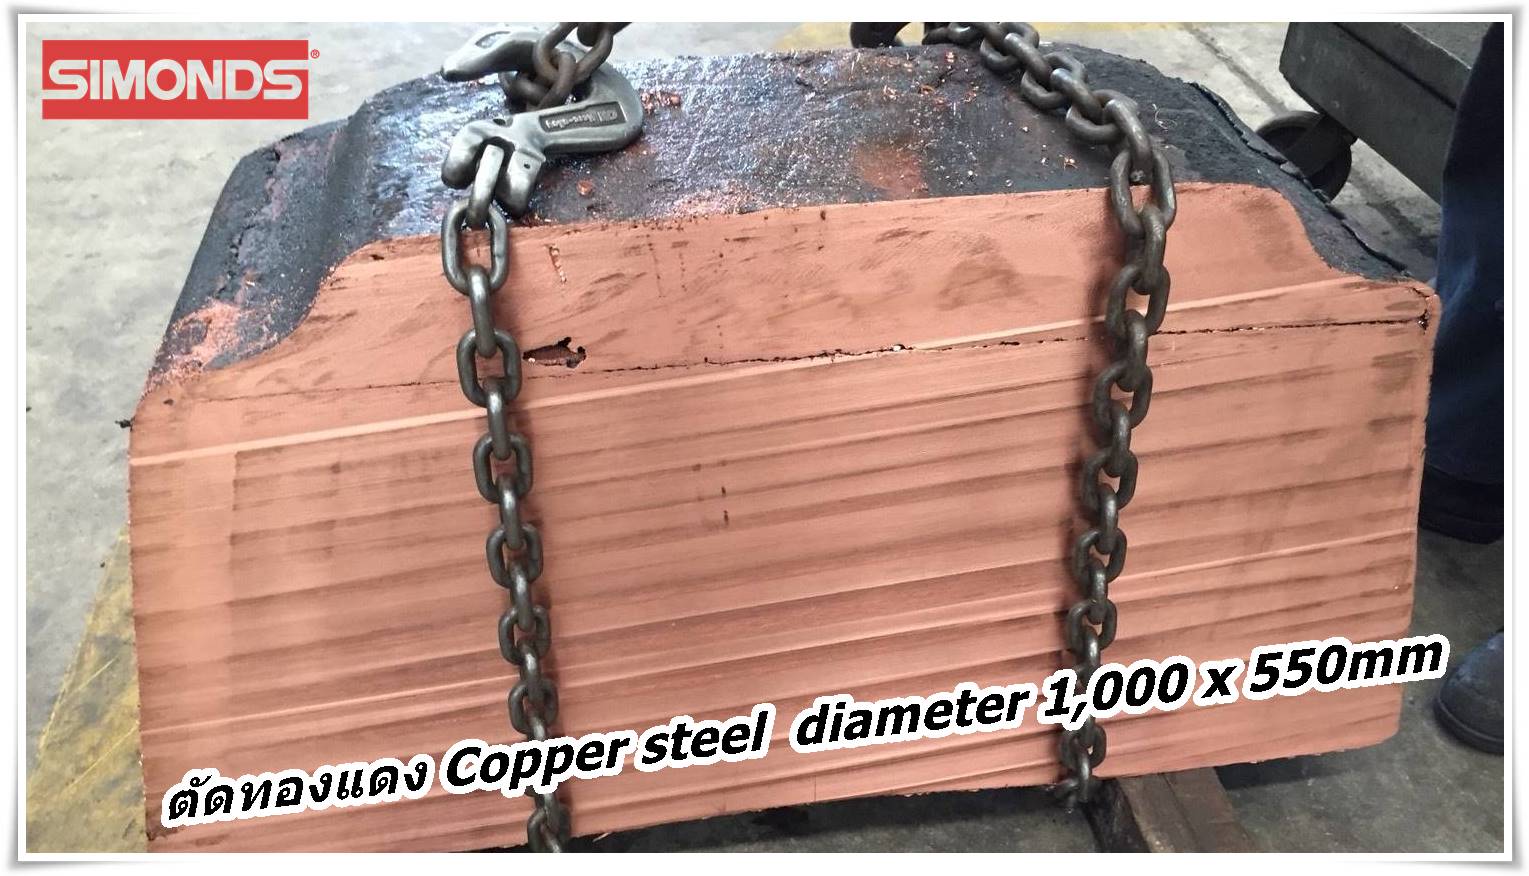 ใบเลื่อยตัดทองแดง, Copper Steel